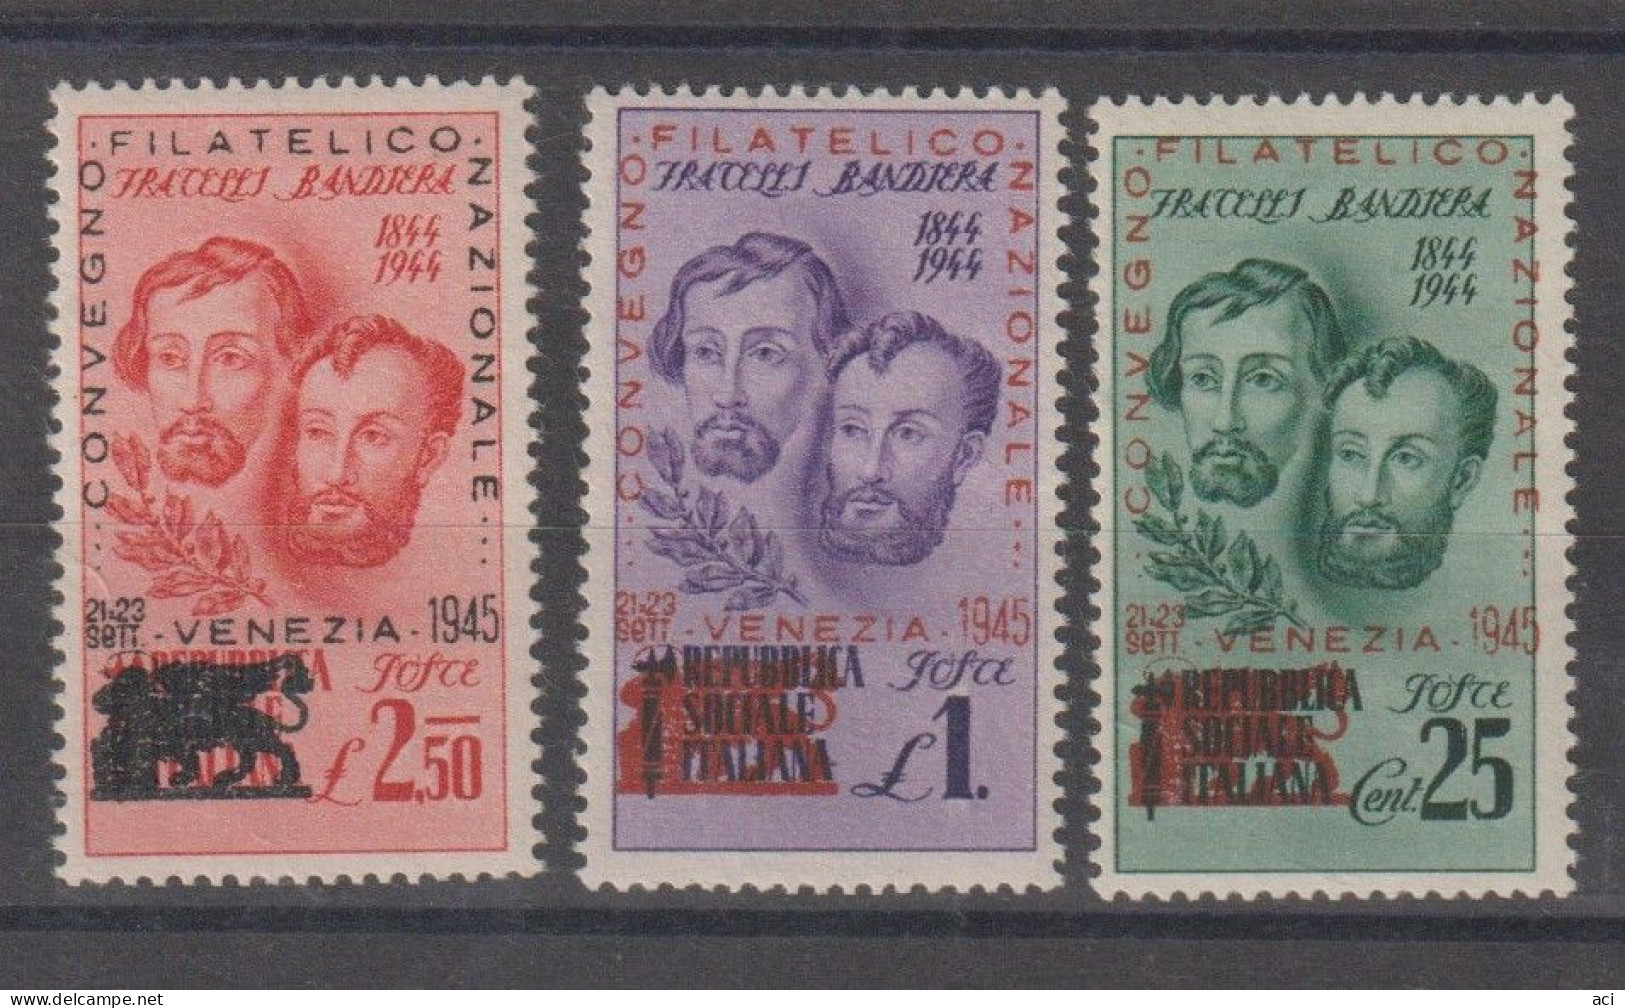 Italia Repubblica Sociale Italiana 1945 Fratelli Bandiera ,Congresso Filatelico Di Venezia,Nuovi, - Emissions Locales/autonomes